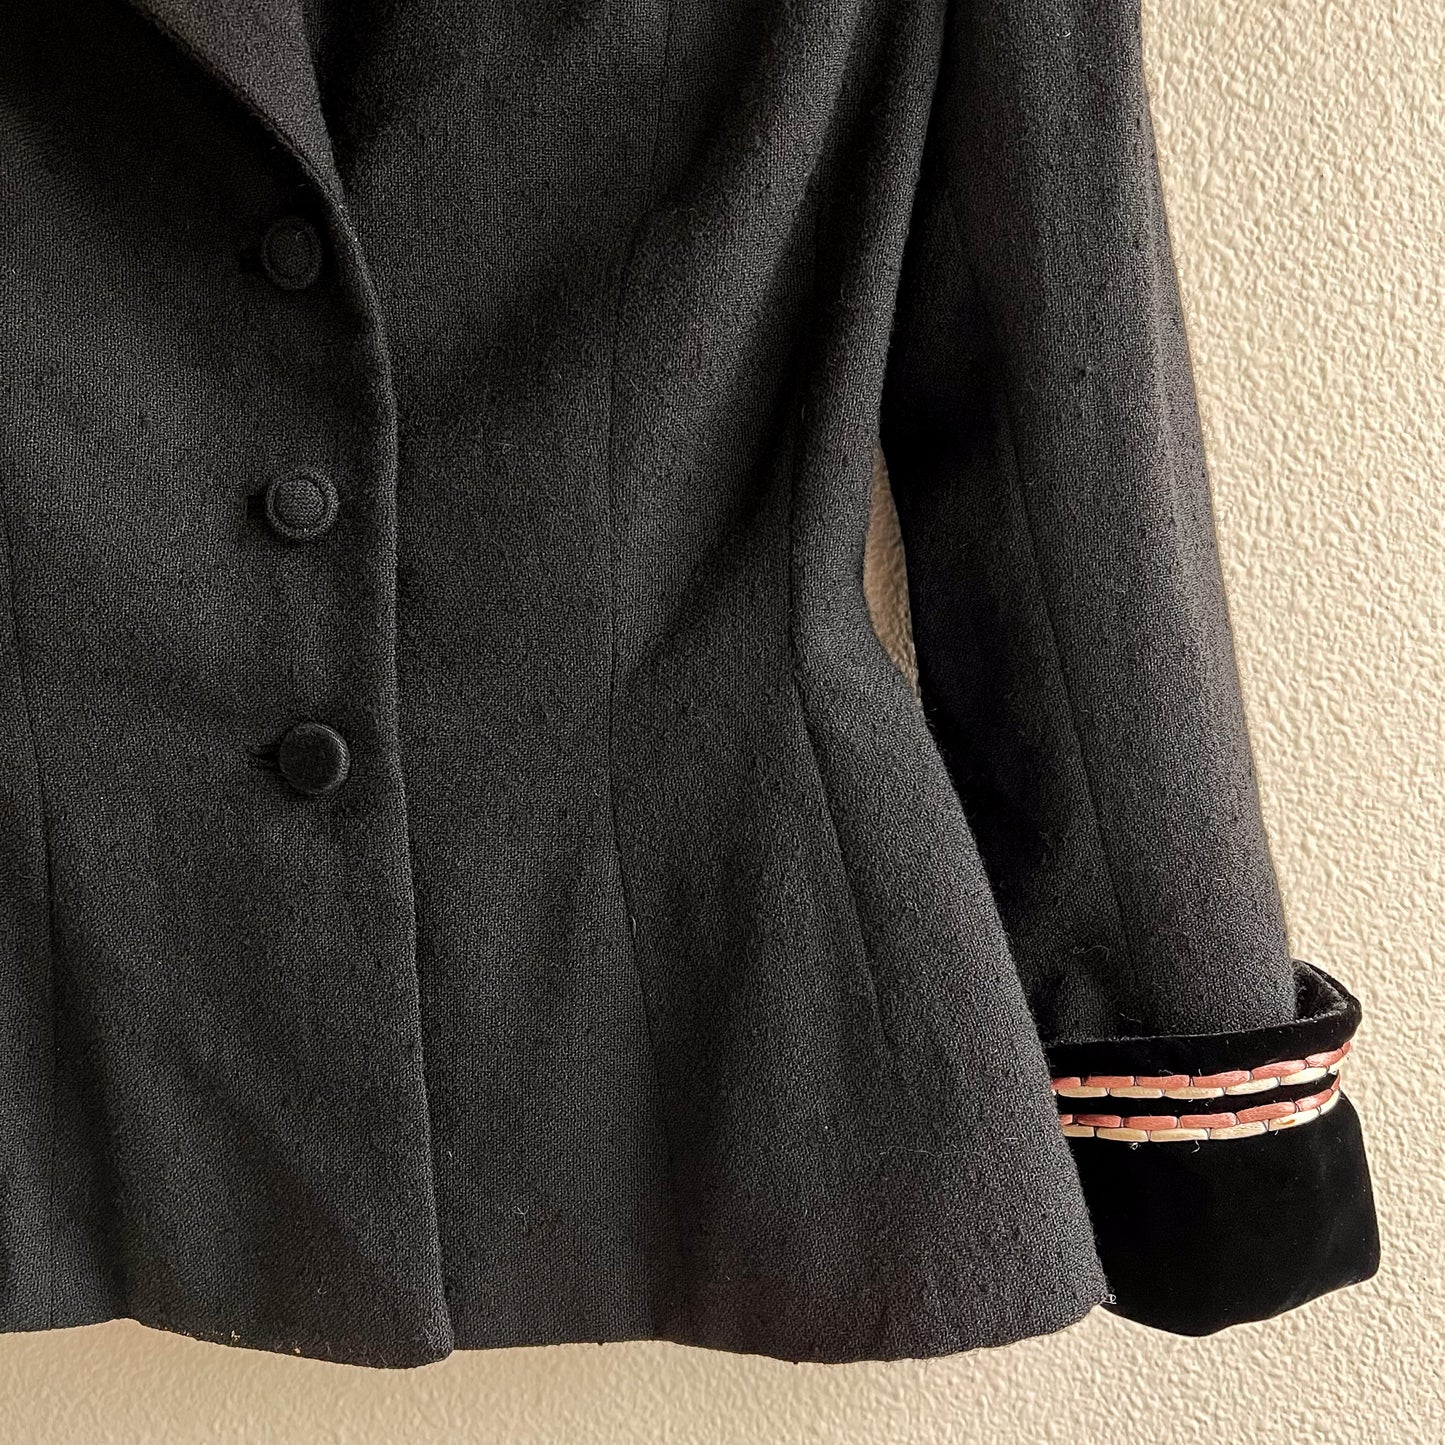 Fabulous 1940s Black Wool Blazer With Trim (XS/S)